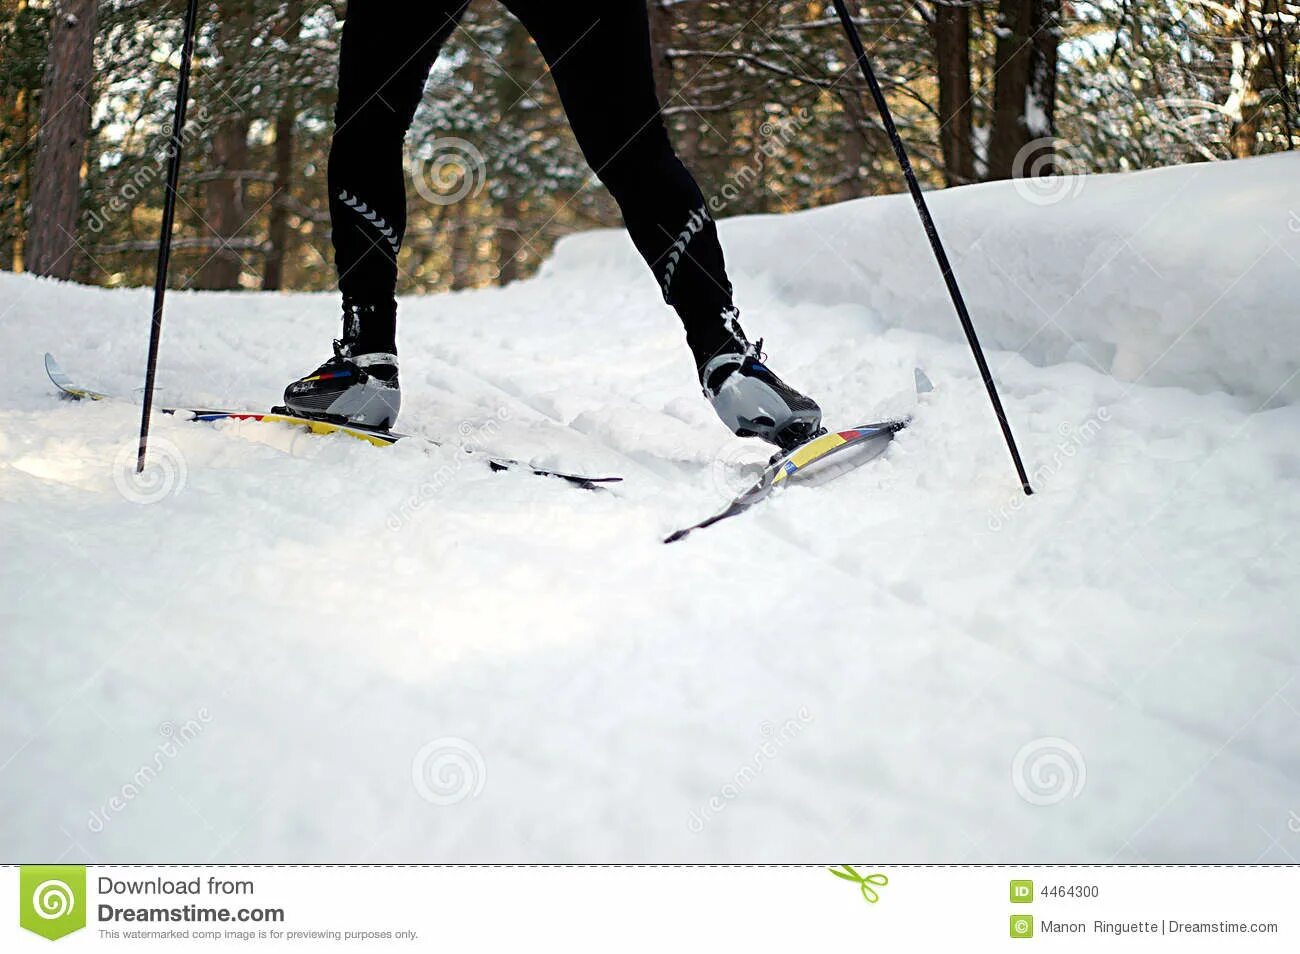 Елочка лыжи. Подъем елочкой на лыжах. Лыжный подъем елочка. Беговой подъем на лыжах. Способ подъема елочка